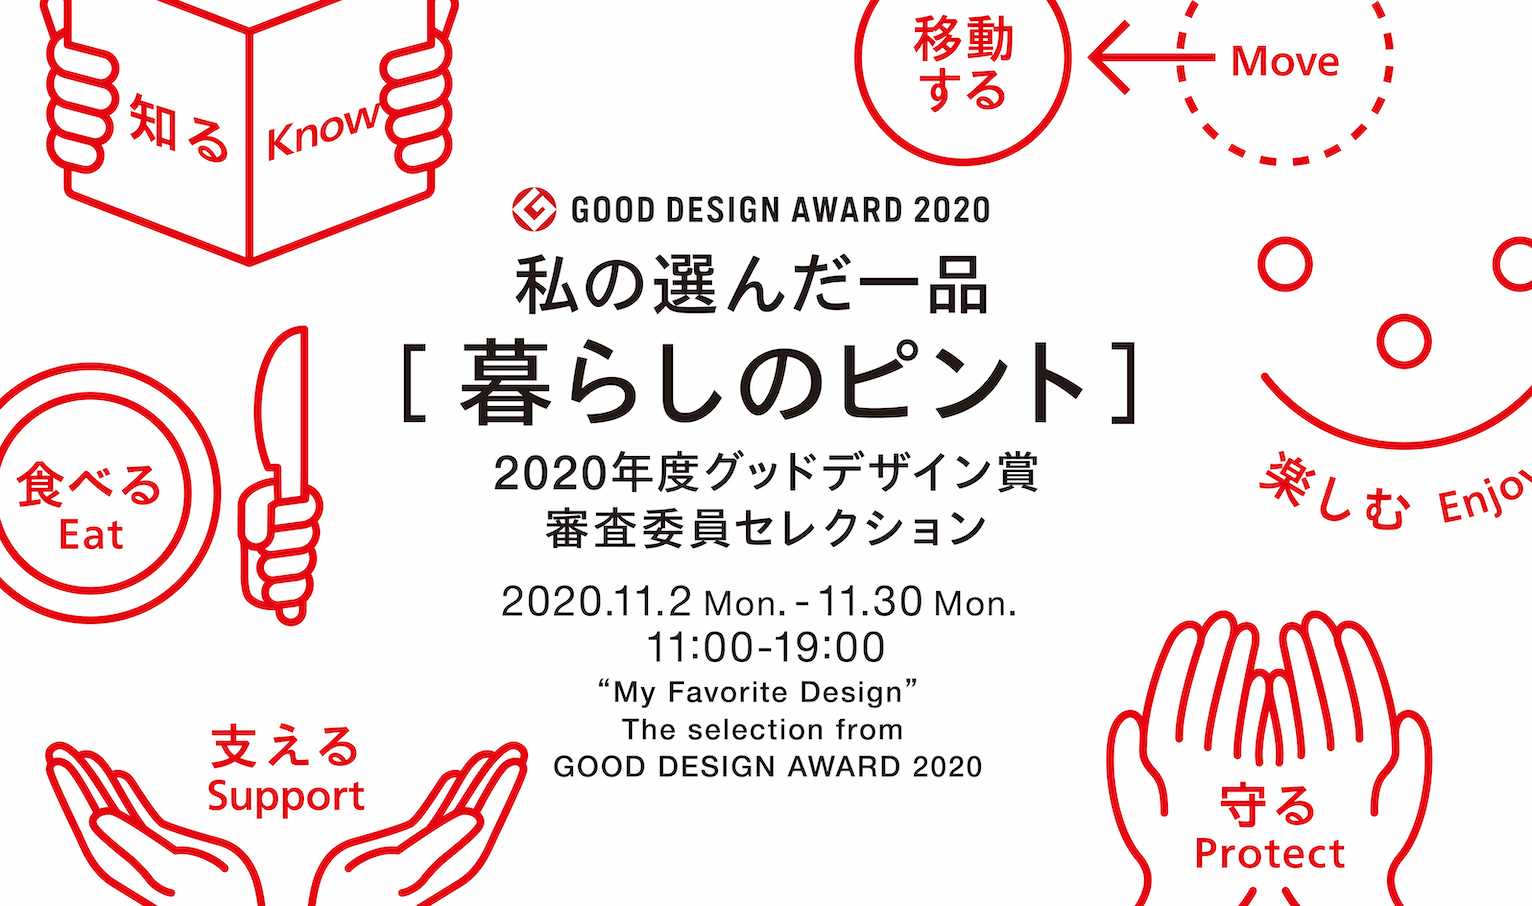 グッドデザイン賞審査委員が選ぶお気に入り 私の選んだ一品 展をgood Design Marunouchiにて開催 日本デザイン振興会のプレスリリース 共同通信prワイヤー